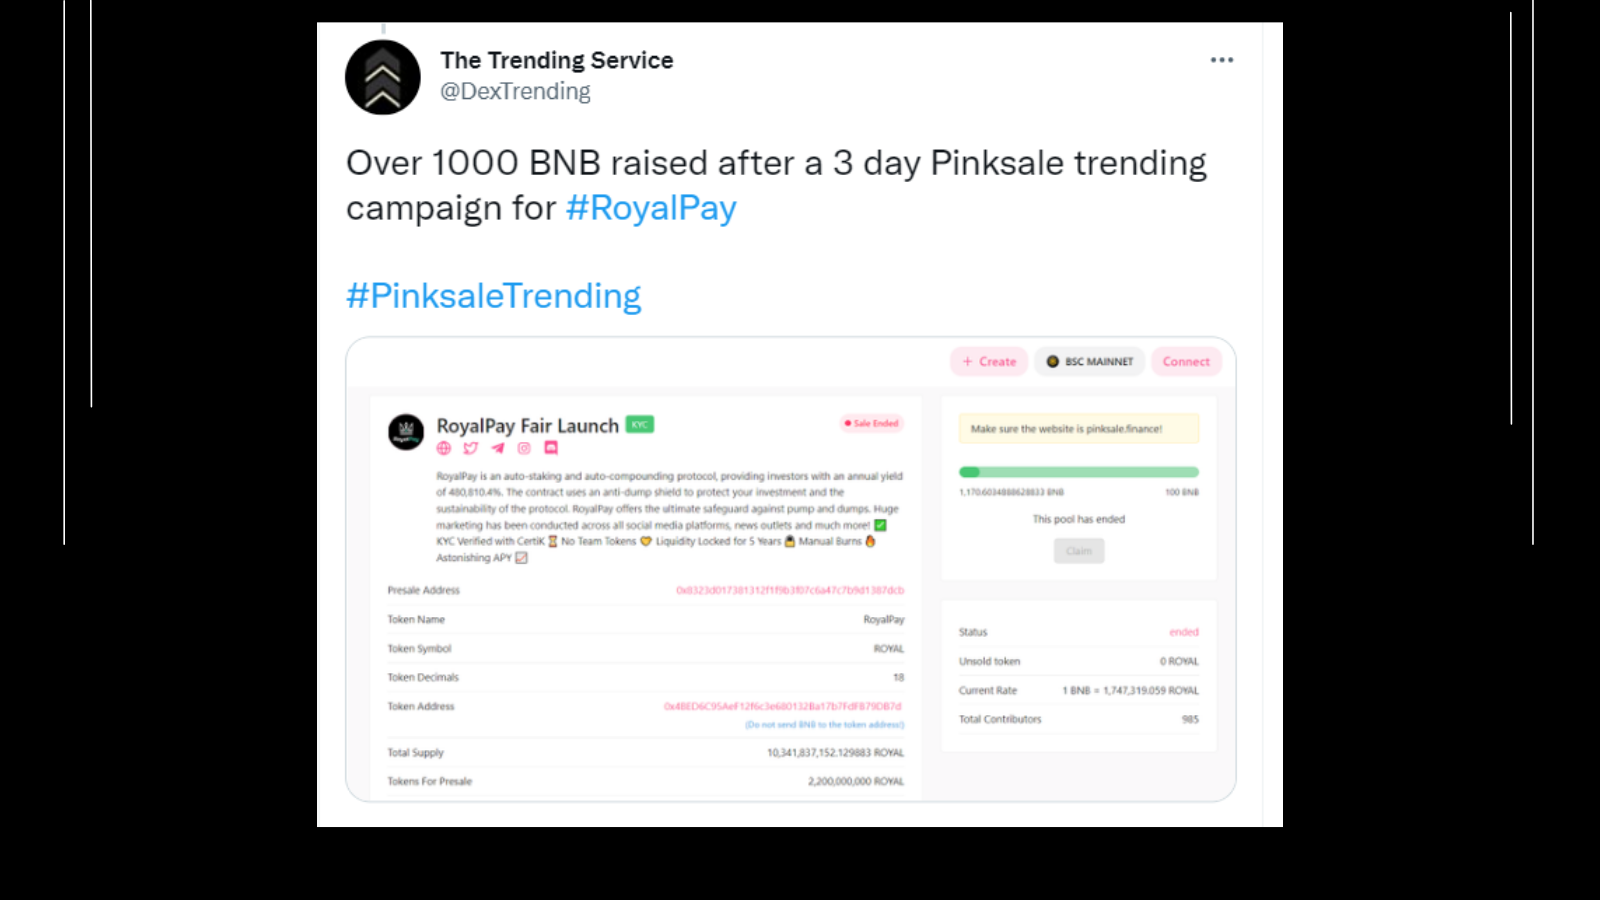 Pinksale-Trending-Service-Royal-Pay-Finance-Presale